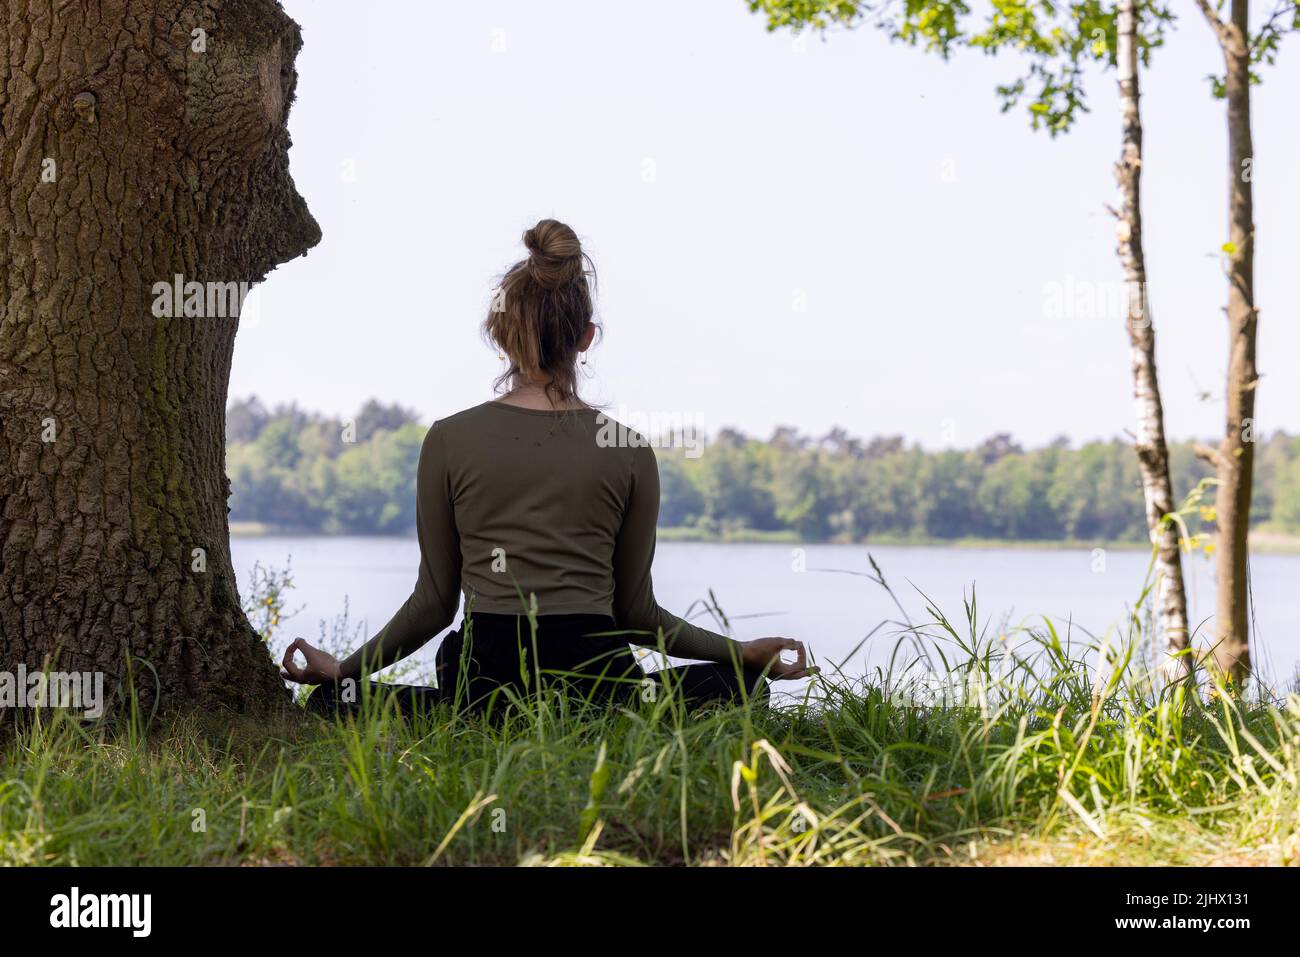 Junge Frau, die Yoga in der Natur praktiziert. Auf grünem Gras neben einem Baum und einem Waldsee sitzend. Kommunizieren Sie, um Sport zu treiben und eine gute Gesundheit zu erhalten. Hochwertige Fotos Stockfoto